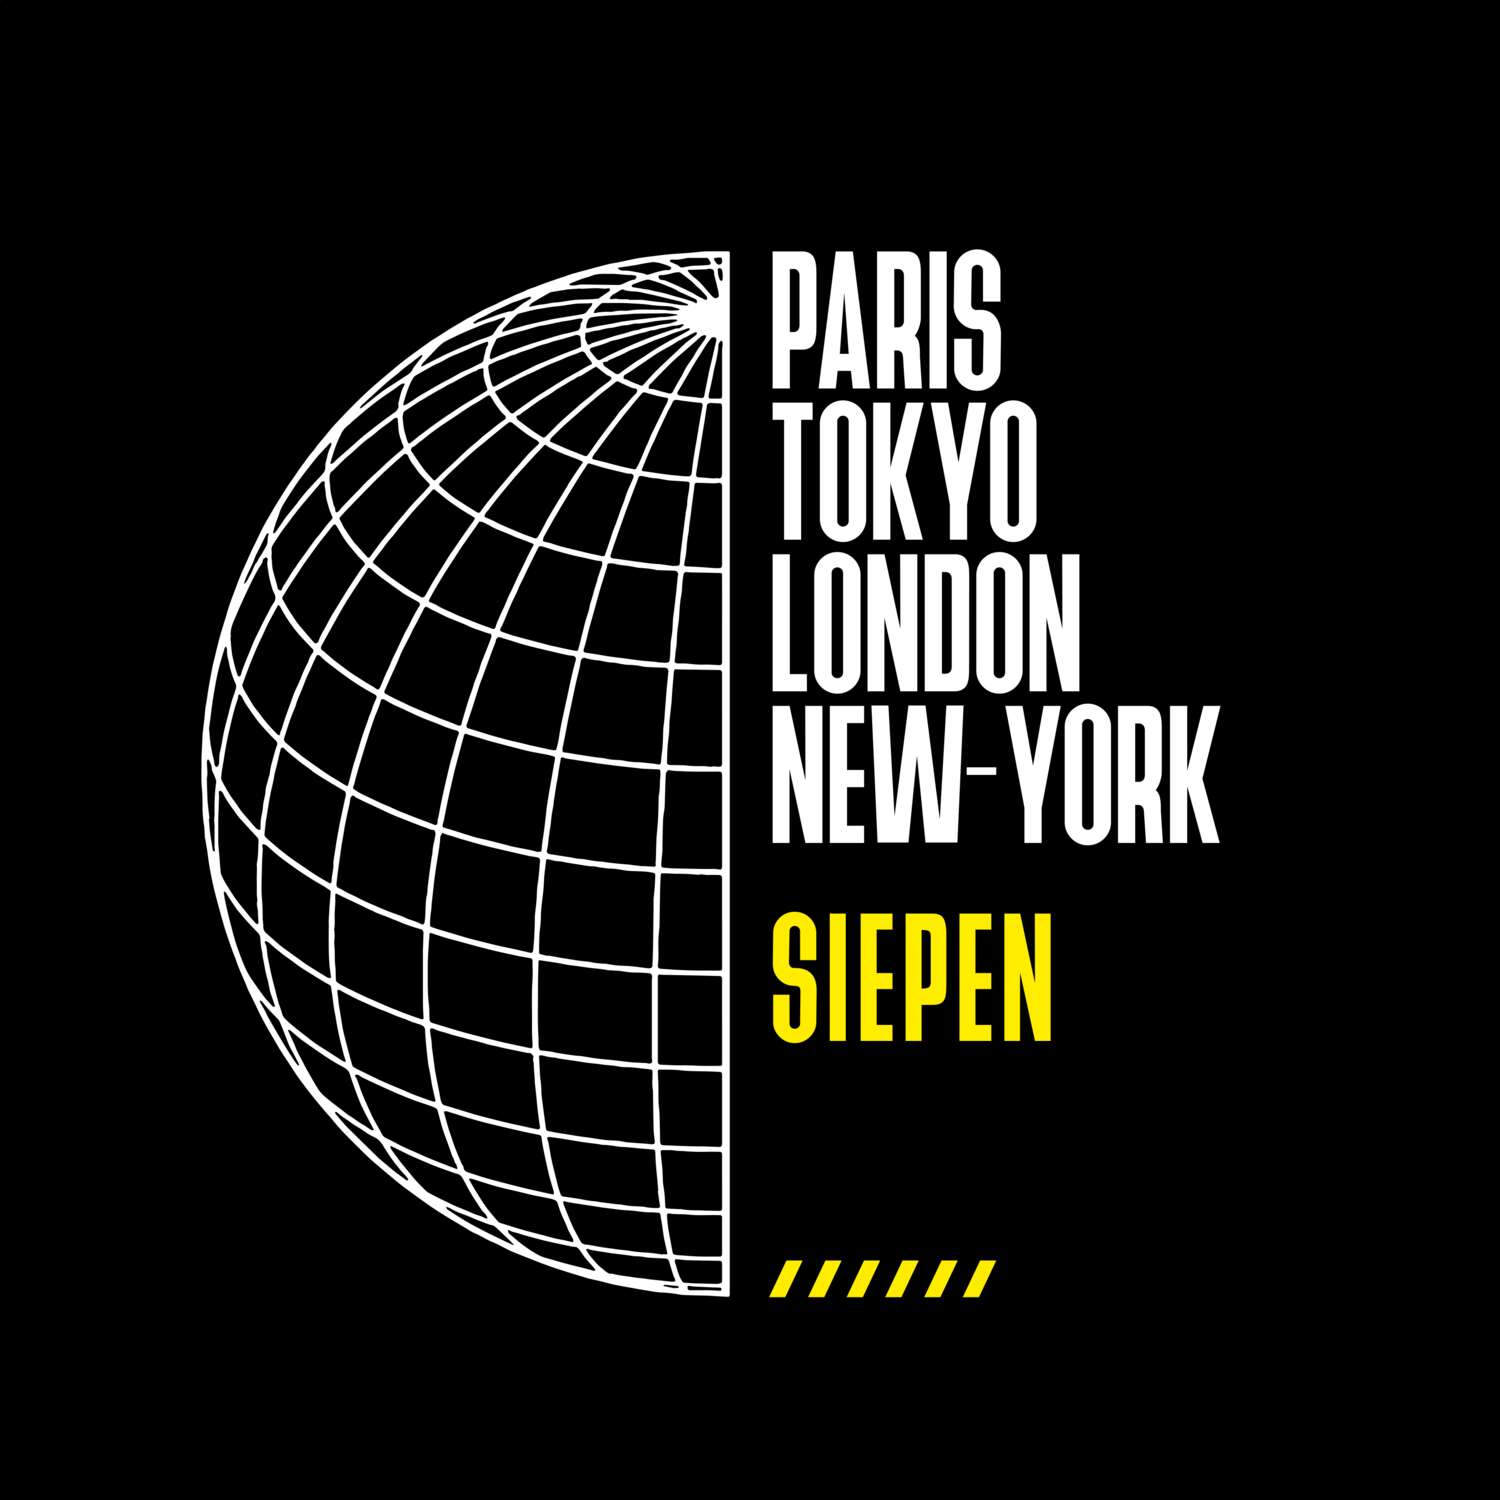 Siepen T-Shirt »Paris Tokyo London«